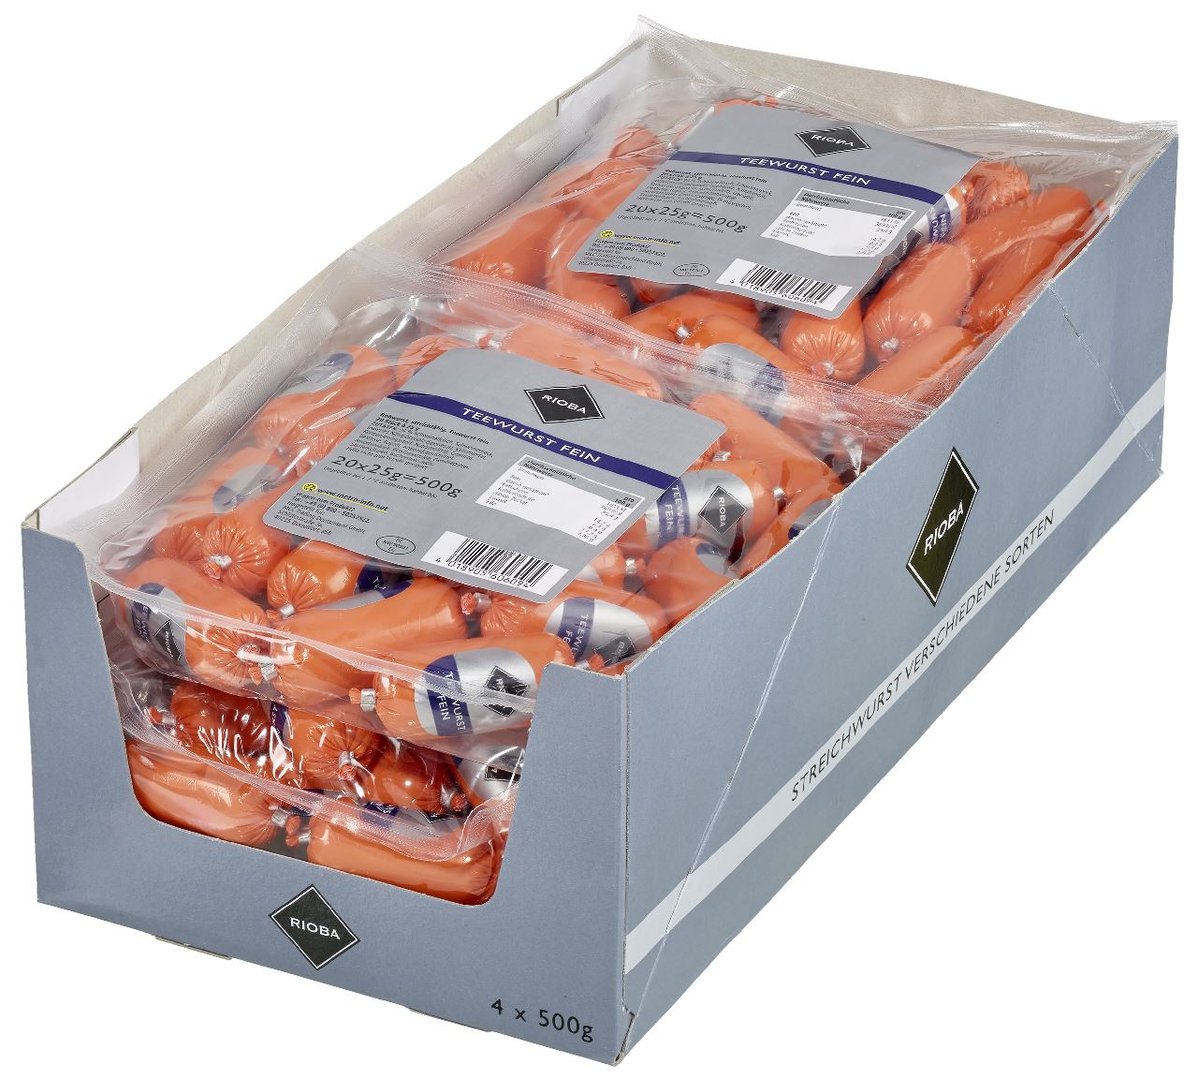 RIOBA - Teewurst fein, 20 Stück à 25 g - 4 x 500 g Karton